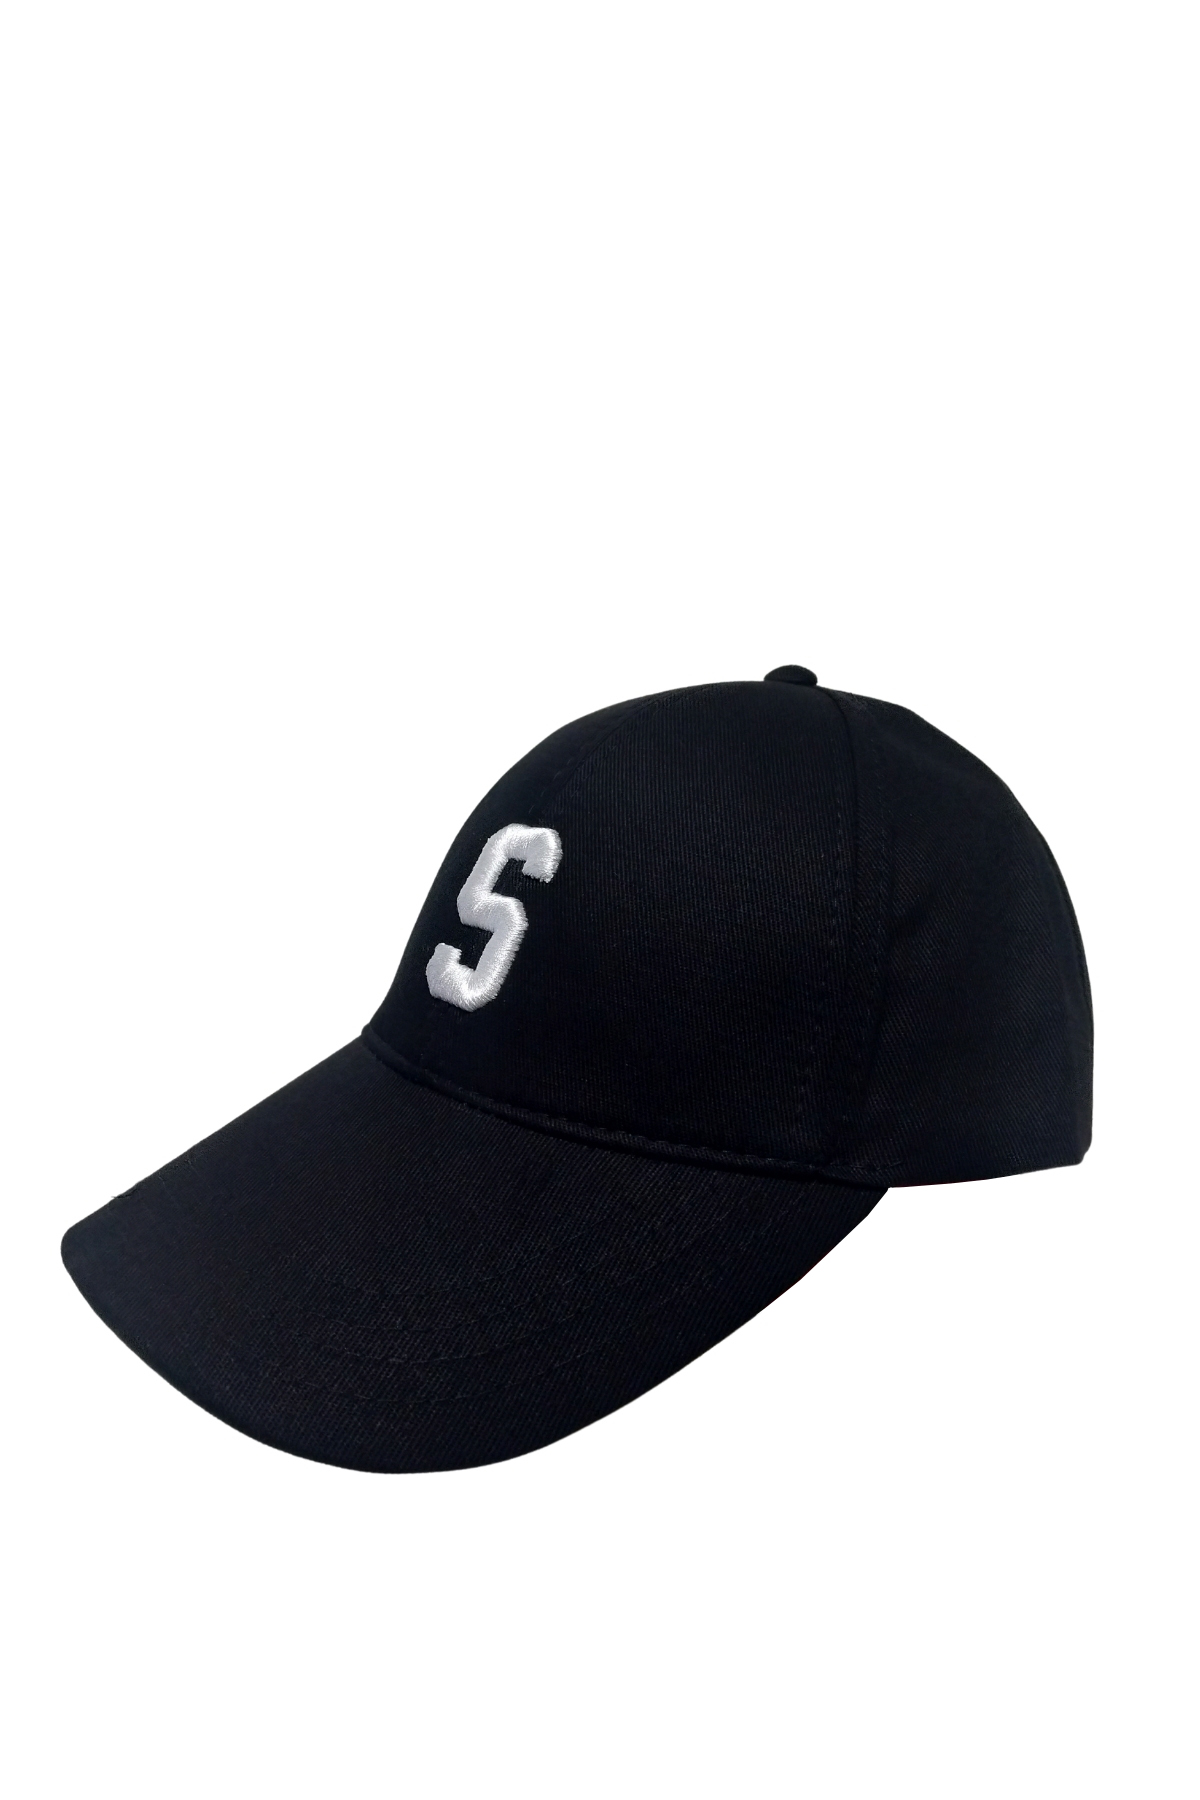 Syt 220 - S Harfli Siyah Şapka